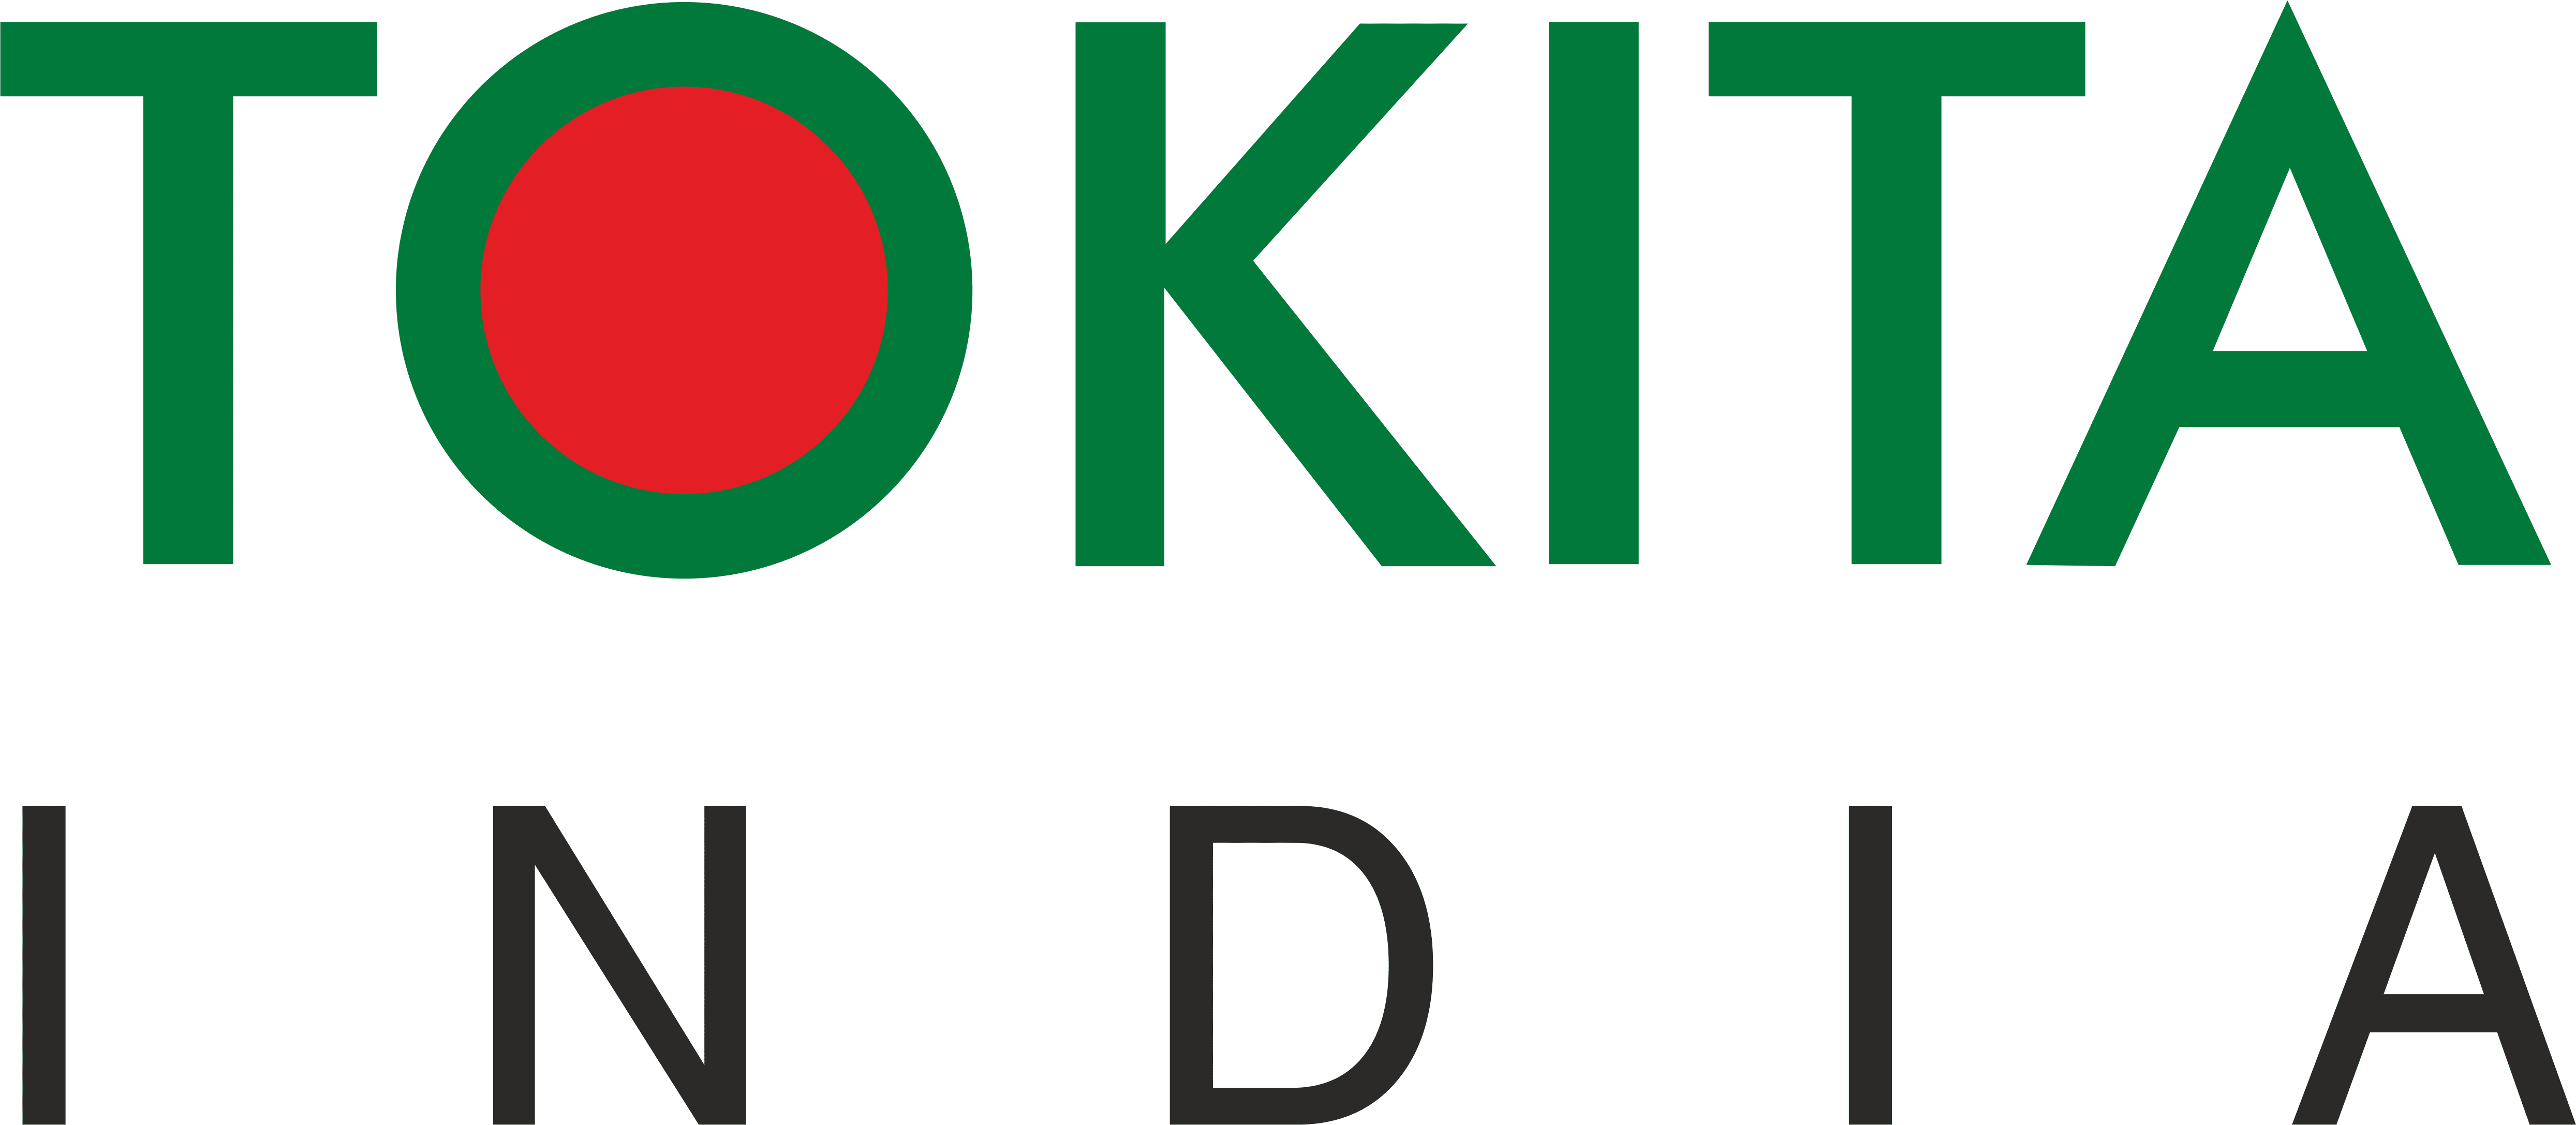 Tokita Seeds India Pvt Ltd